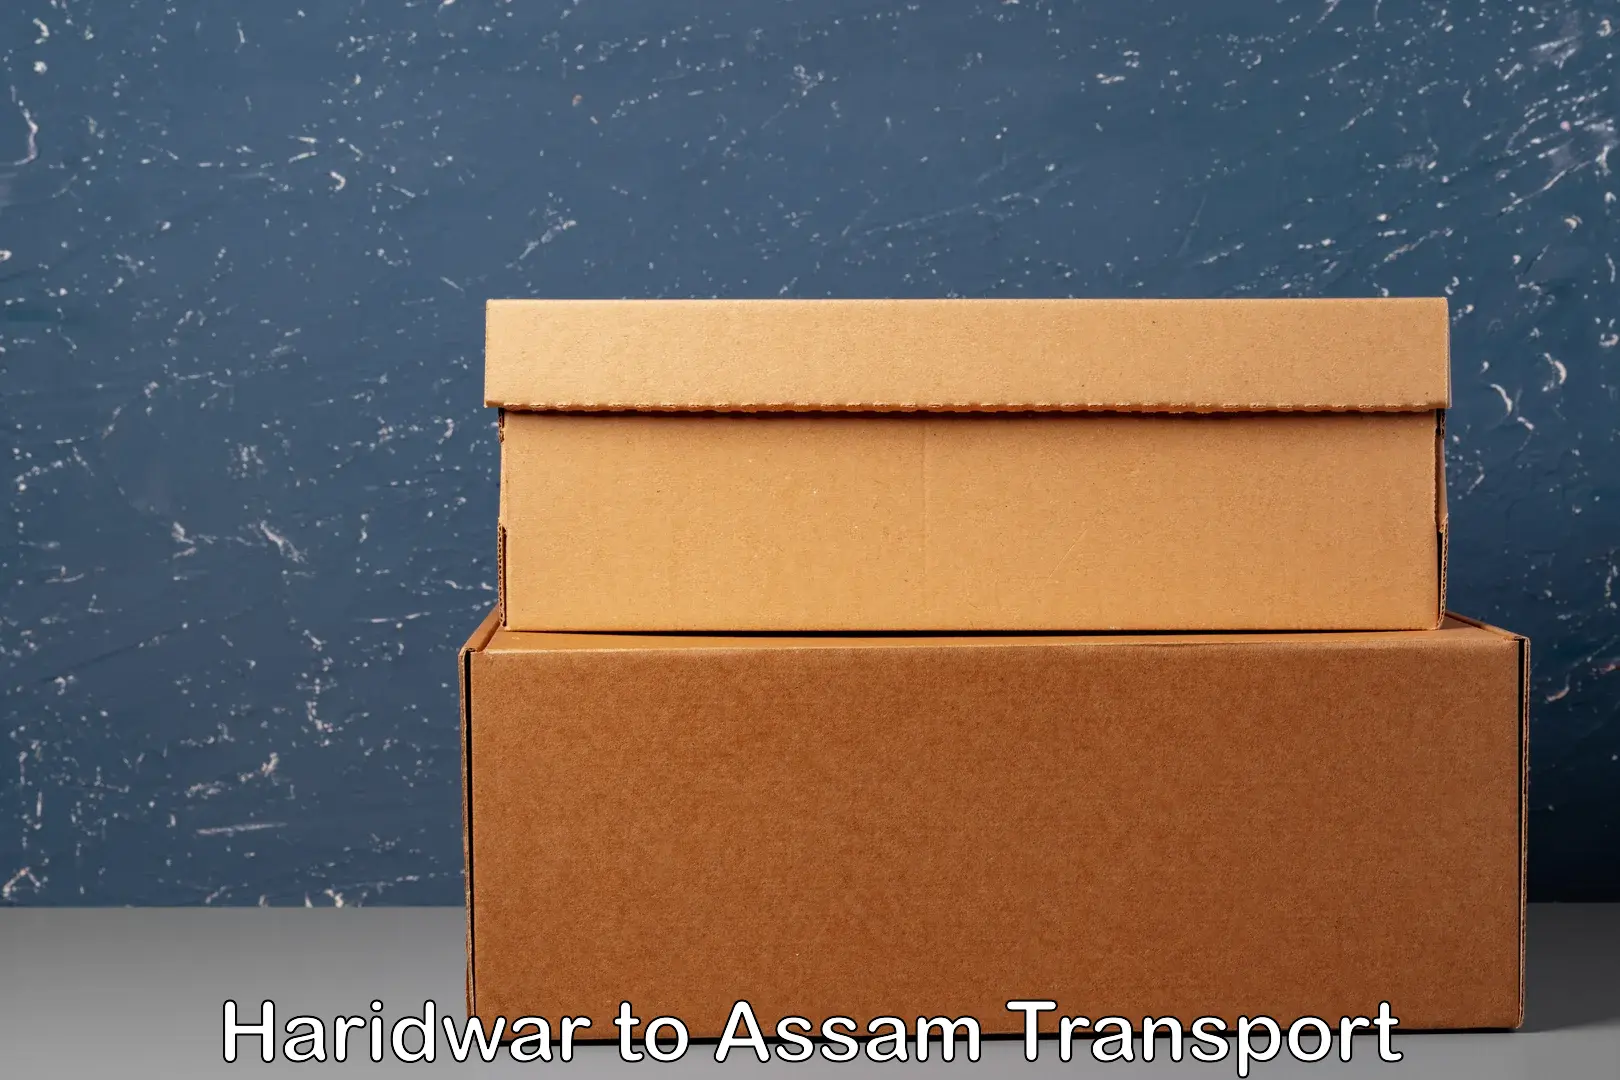 Nearest transport service Haridwar to Assam